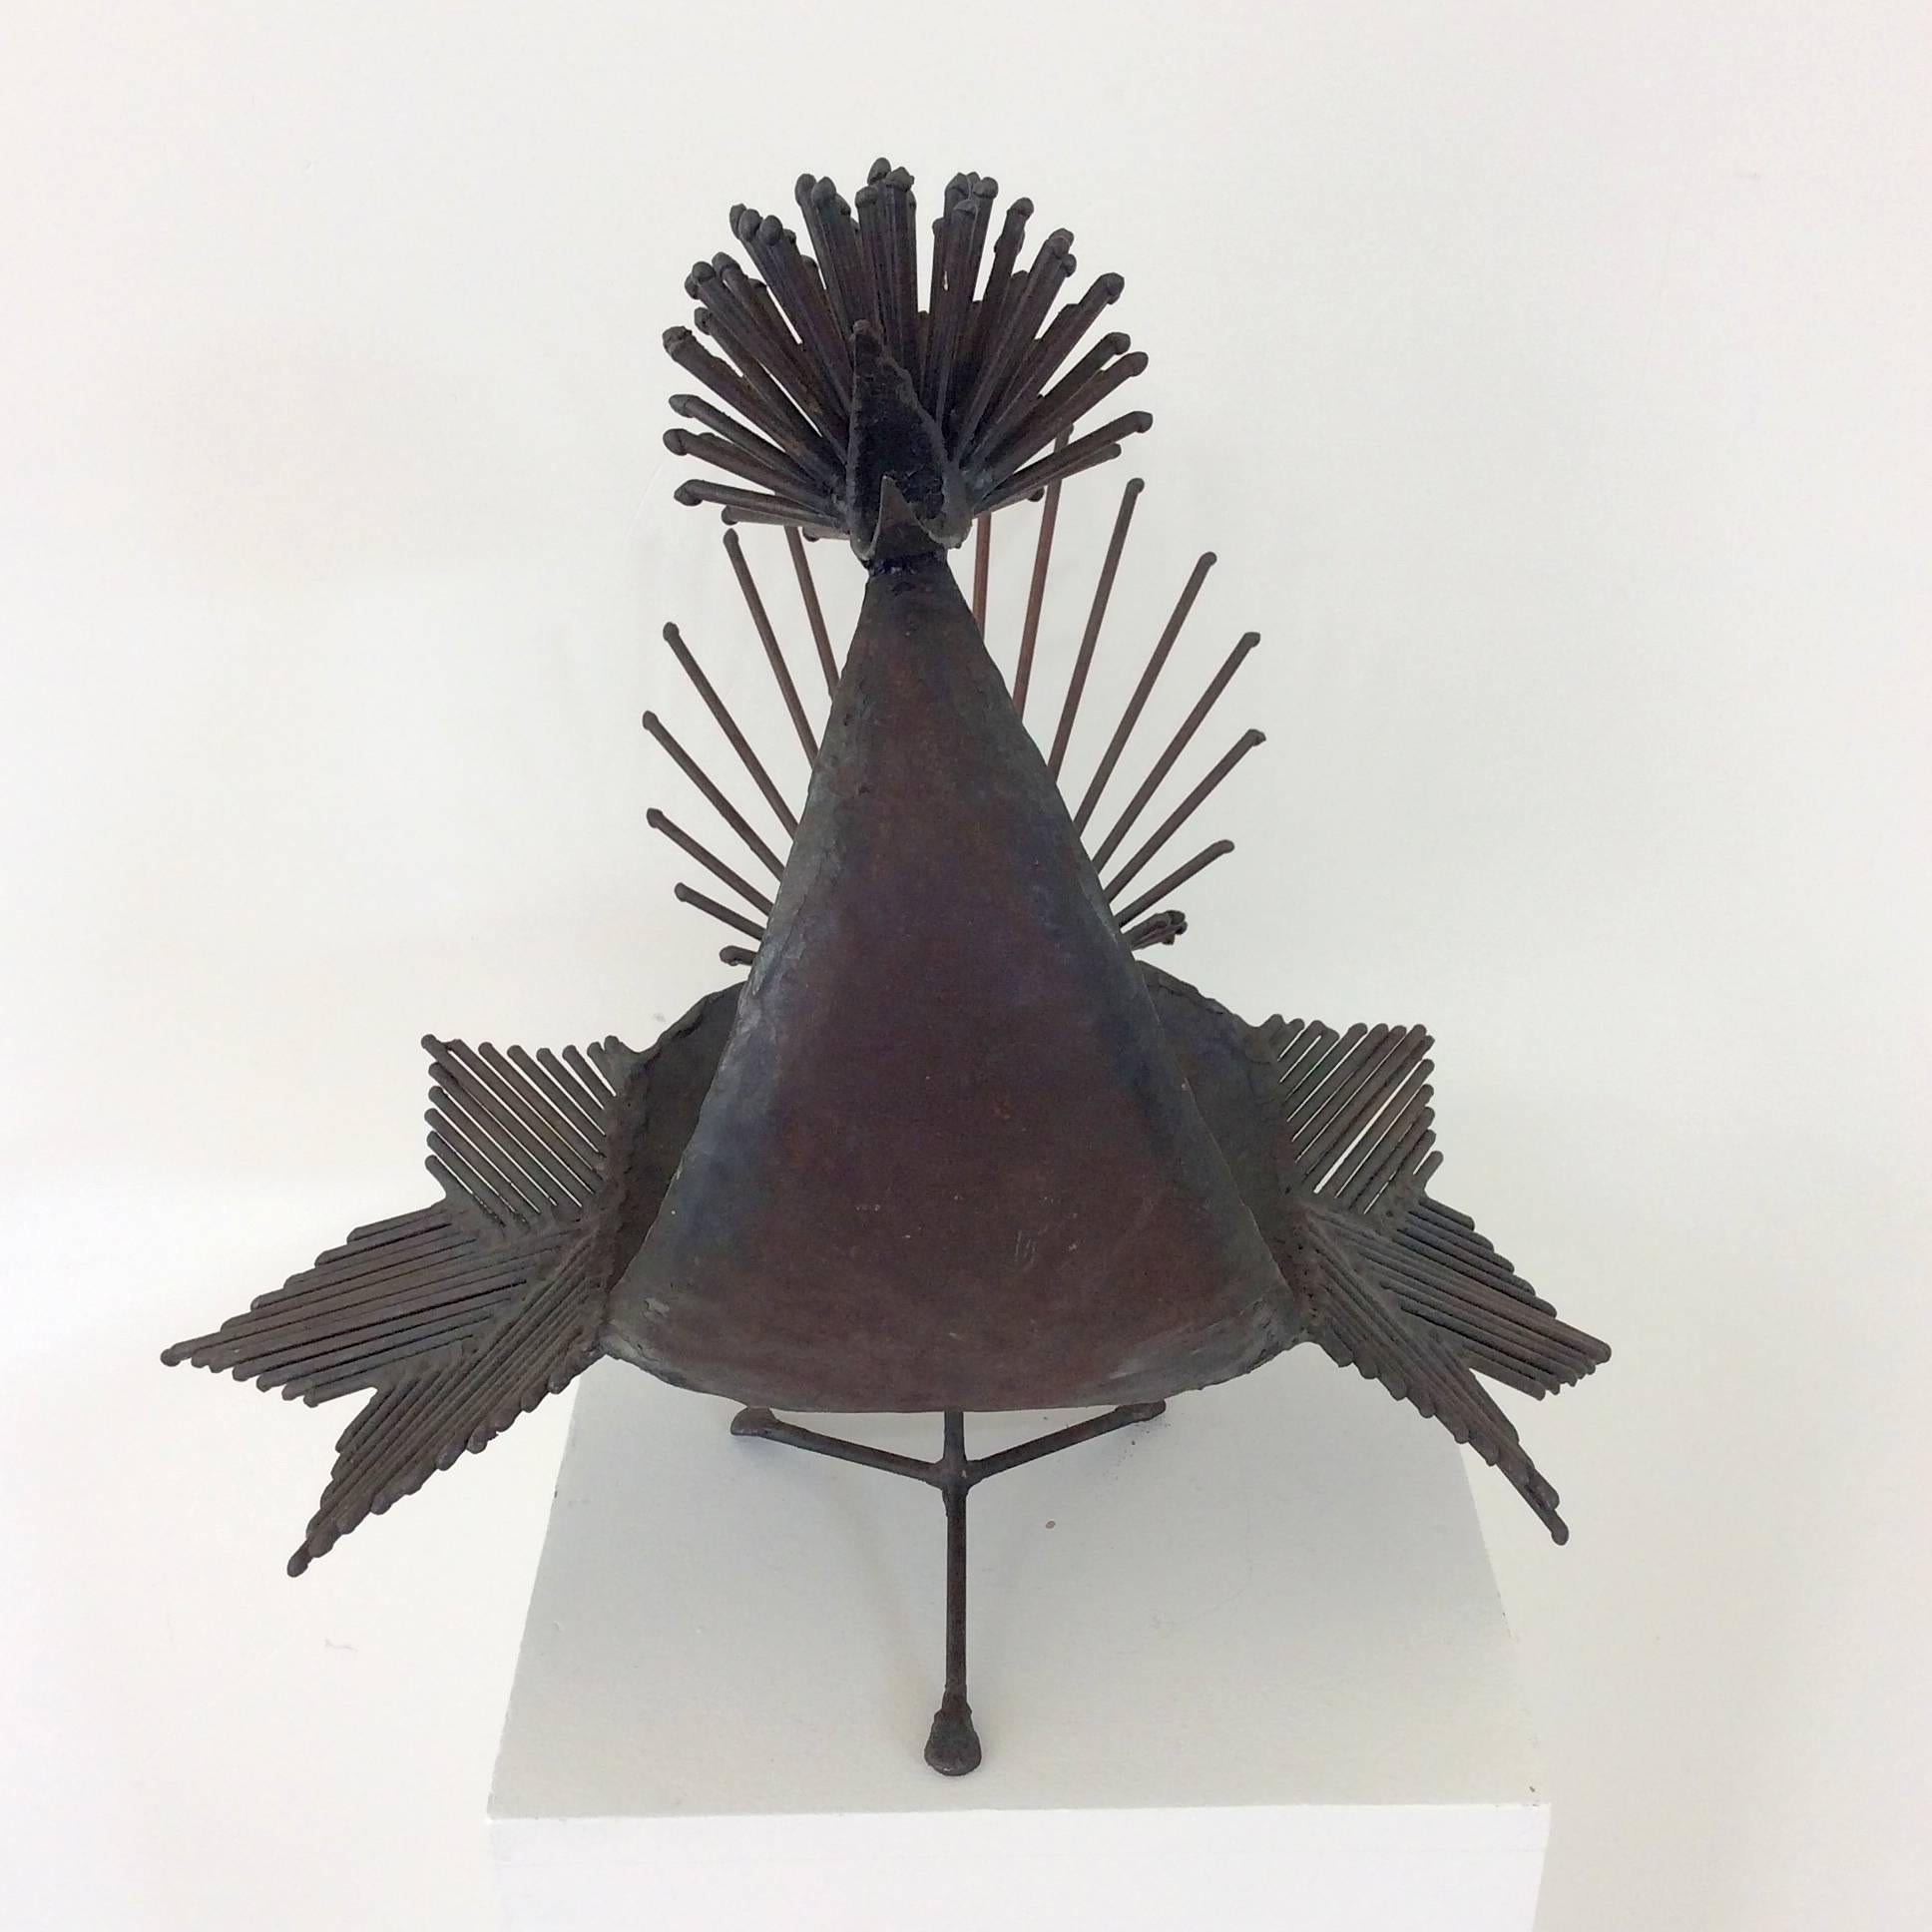 Welded Michel Anasse Bird Sculpture, France, circa 1960